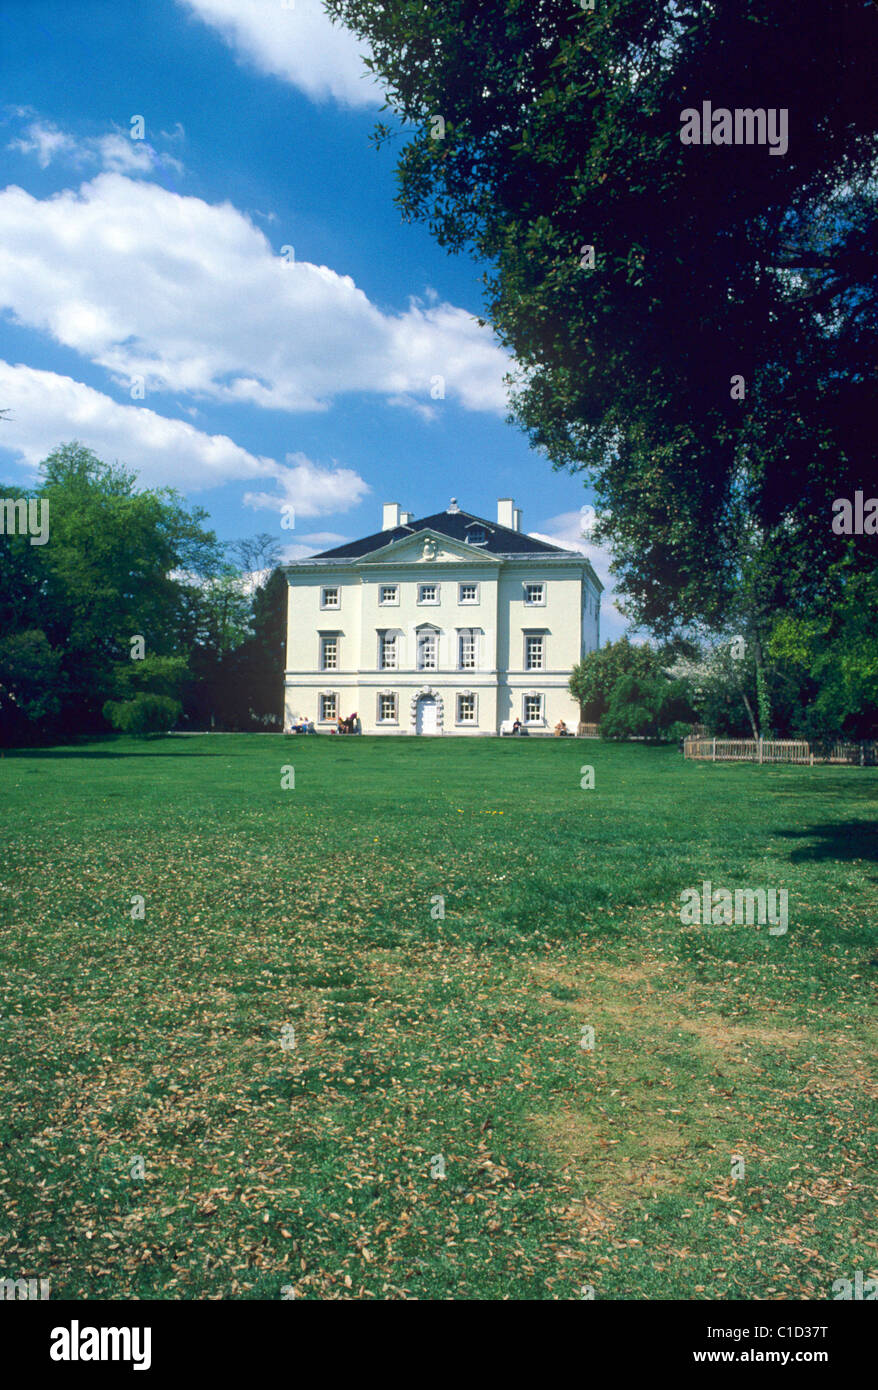 Marble Hill House, Richmond, Surrey, Englisch 18. Jahrhundert Häuser Architektur England UK für George 2. Herrin Stockfoto